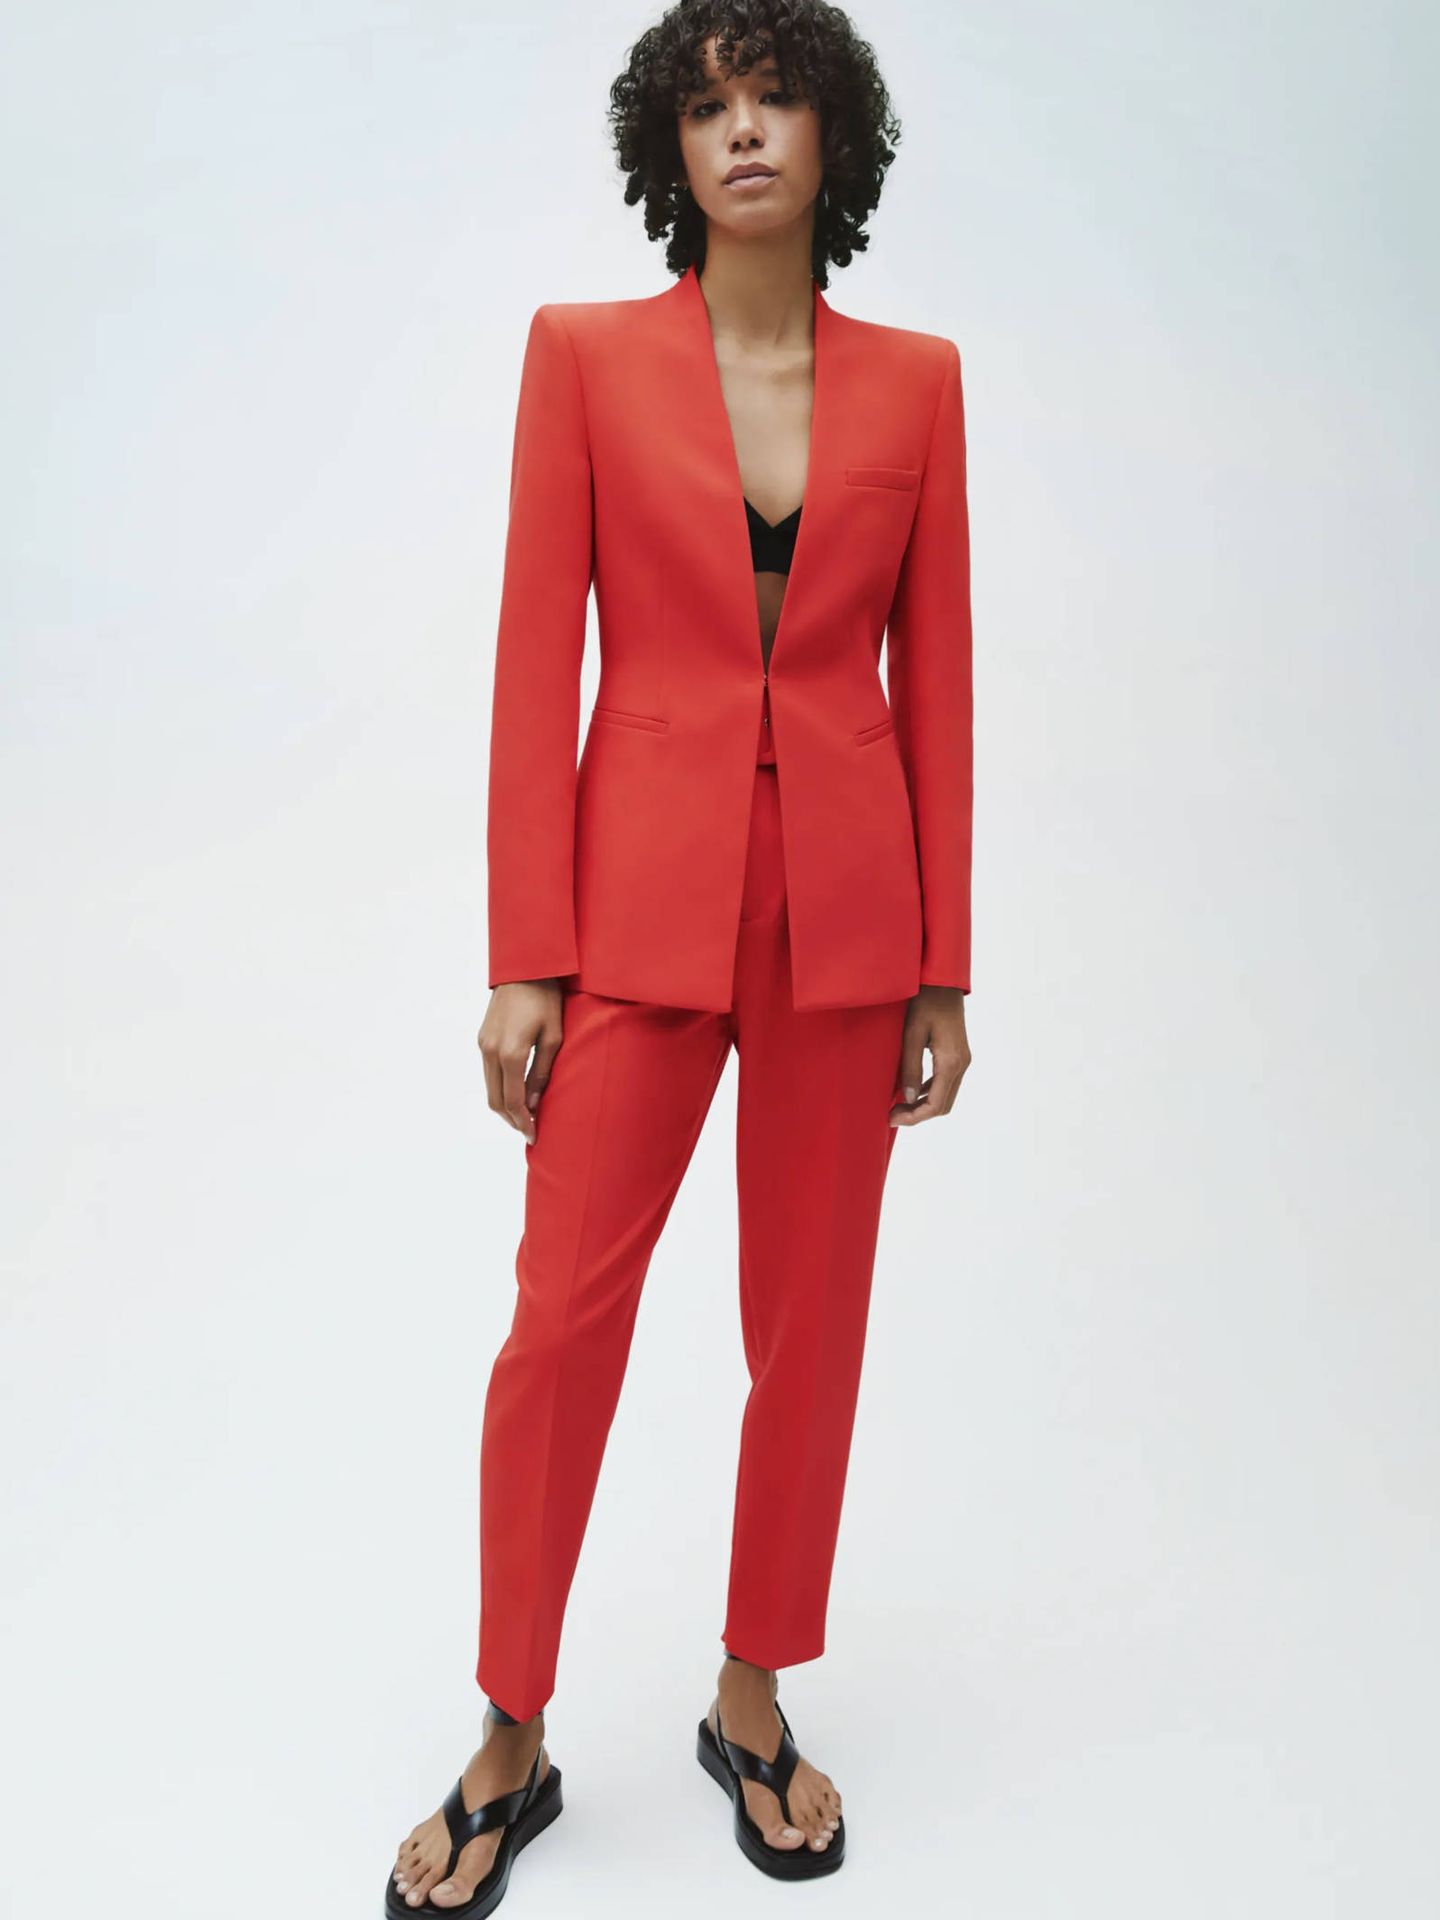 Zara nos invita a versionar traje rojo de la reina con este blazer y pantalón